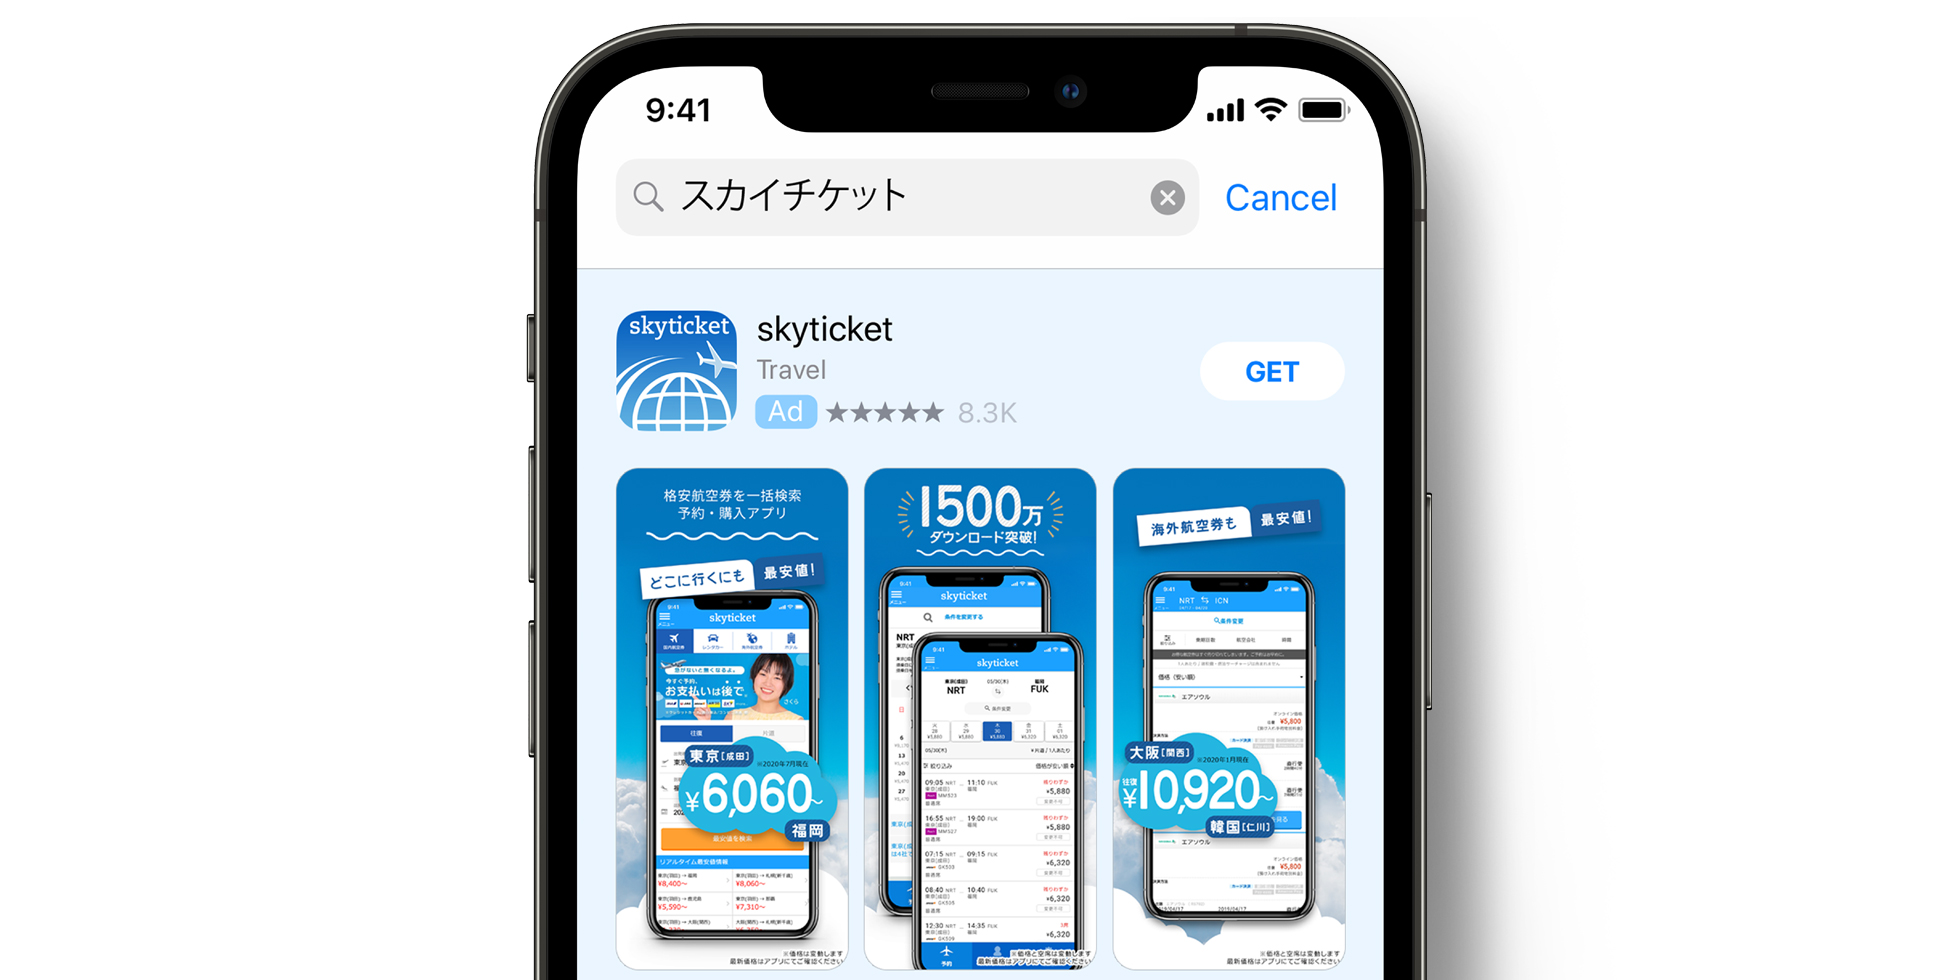 skyticket Anzeige im App Store